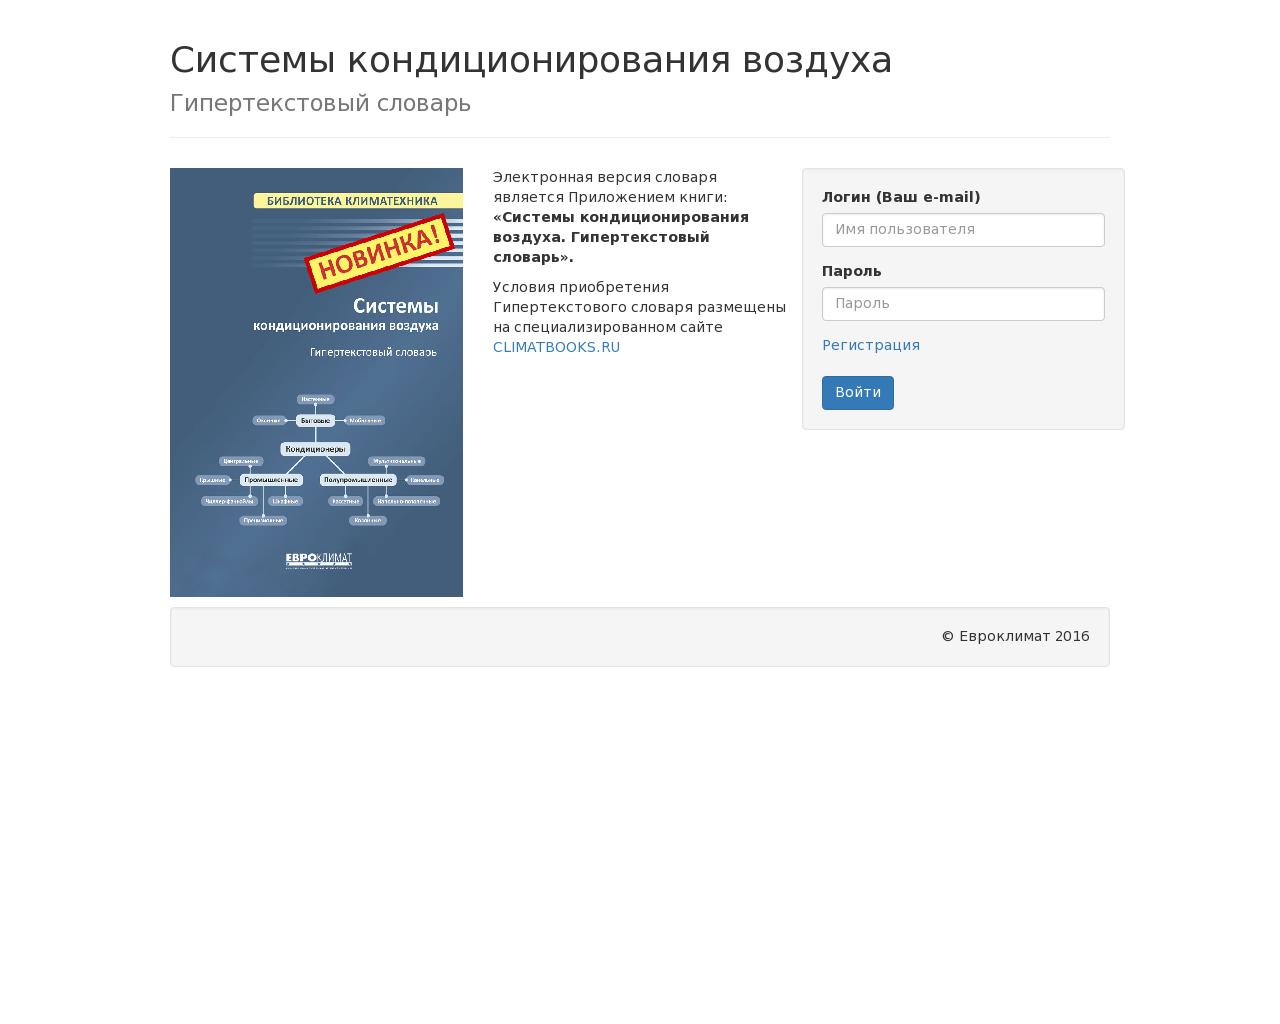 Изображение сайта cond-sale.ru в разрешении 1280x1024